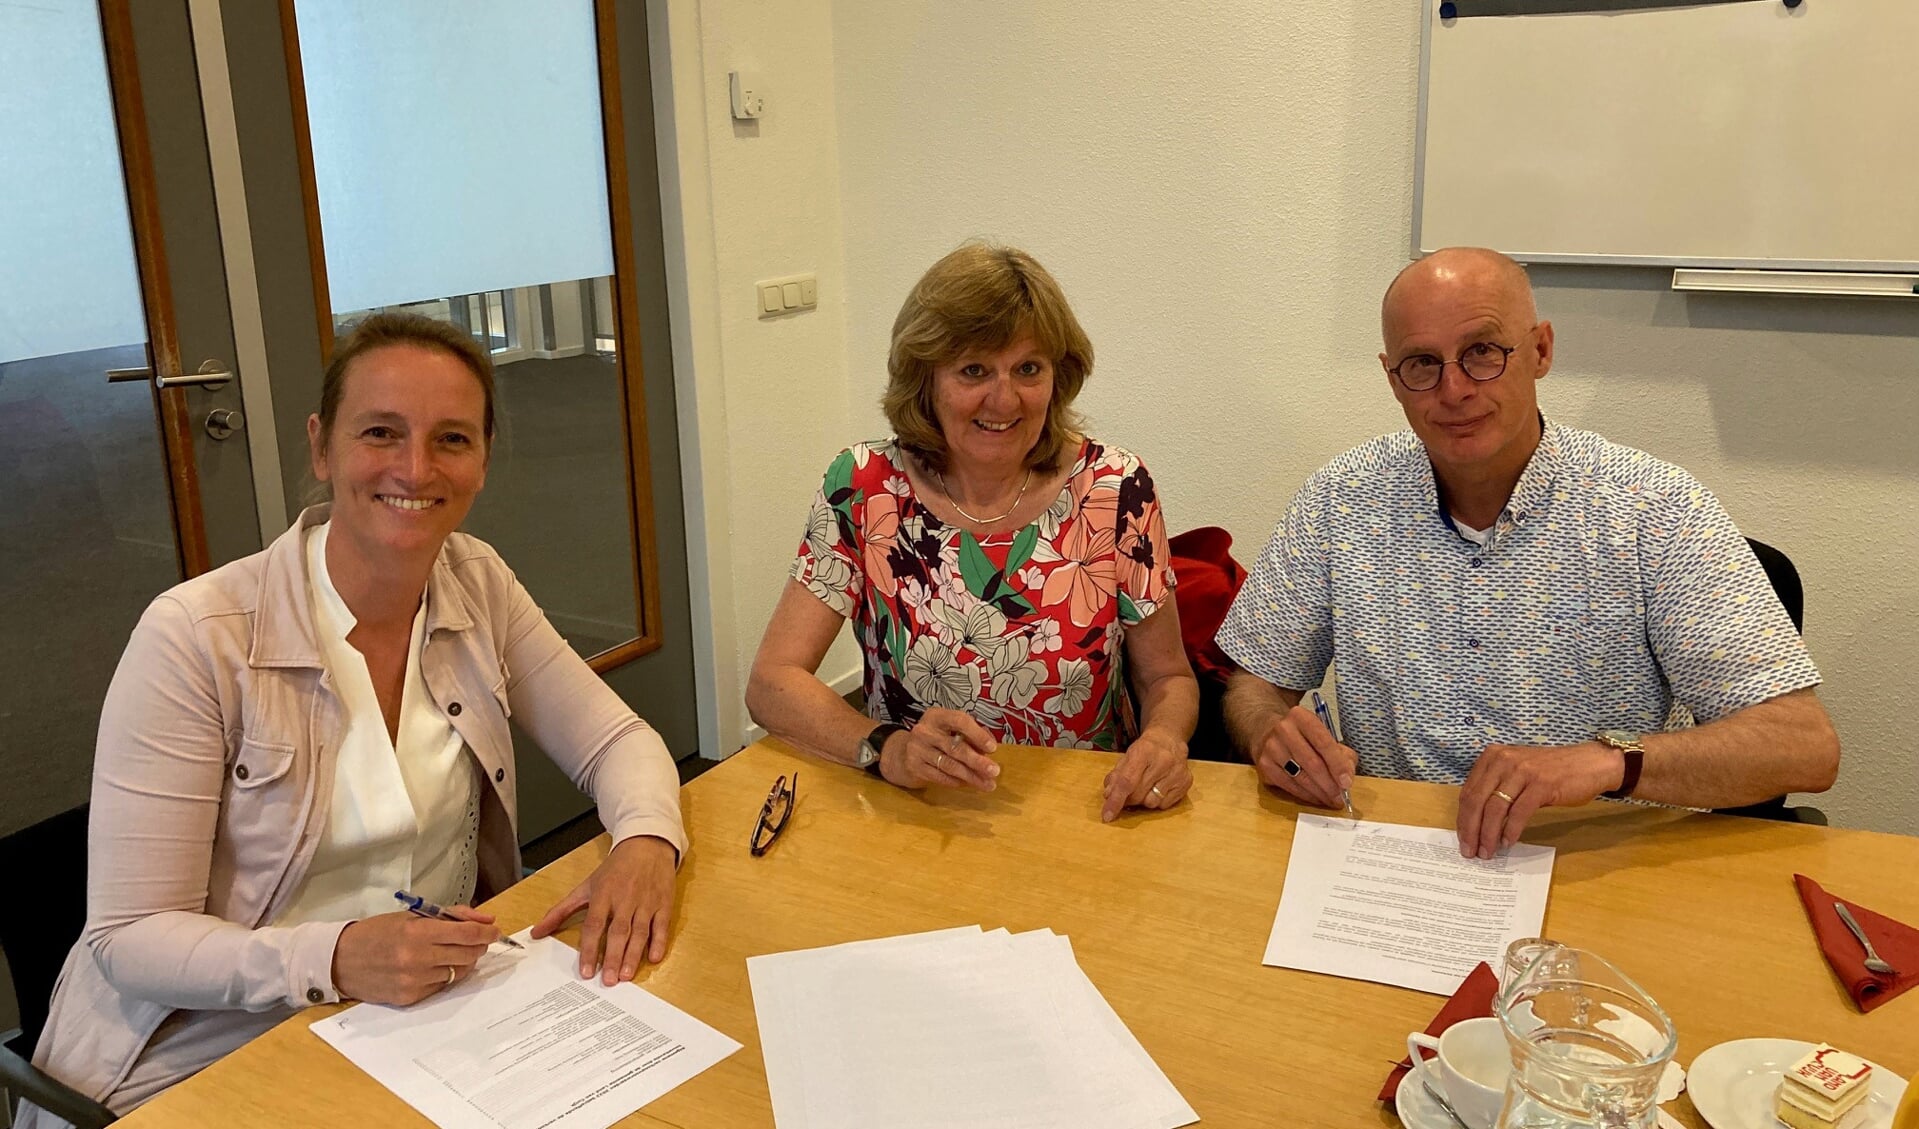 De ondertekenaars. V.l.n.r. Bouke de Bruin, wethouder gemeente Land van Cuijk, Anja Kuipers, voorzitter CPO-De Maarle en Arjo Janssen CPO-groep ondertekenen de overeenkomst tot aankoop van grond. 